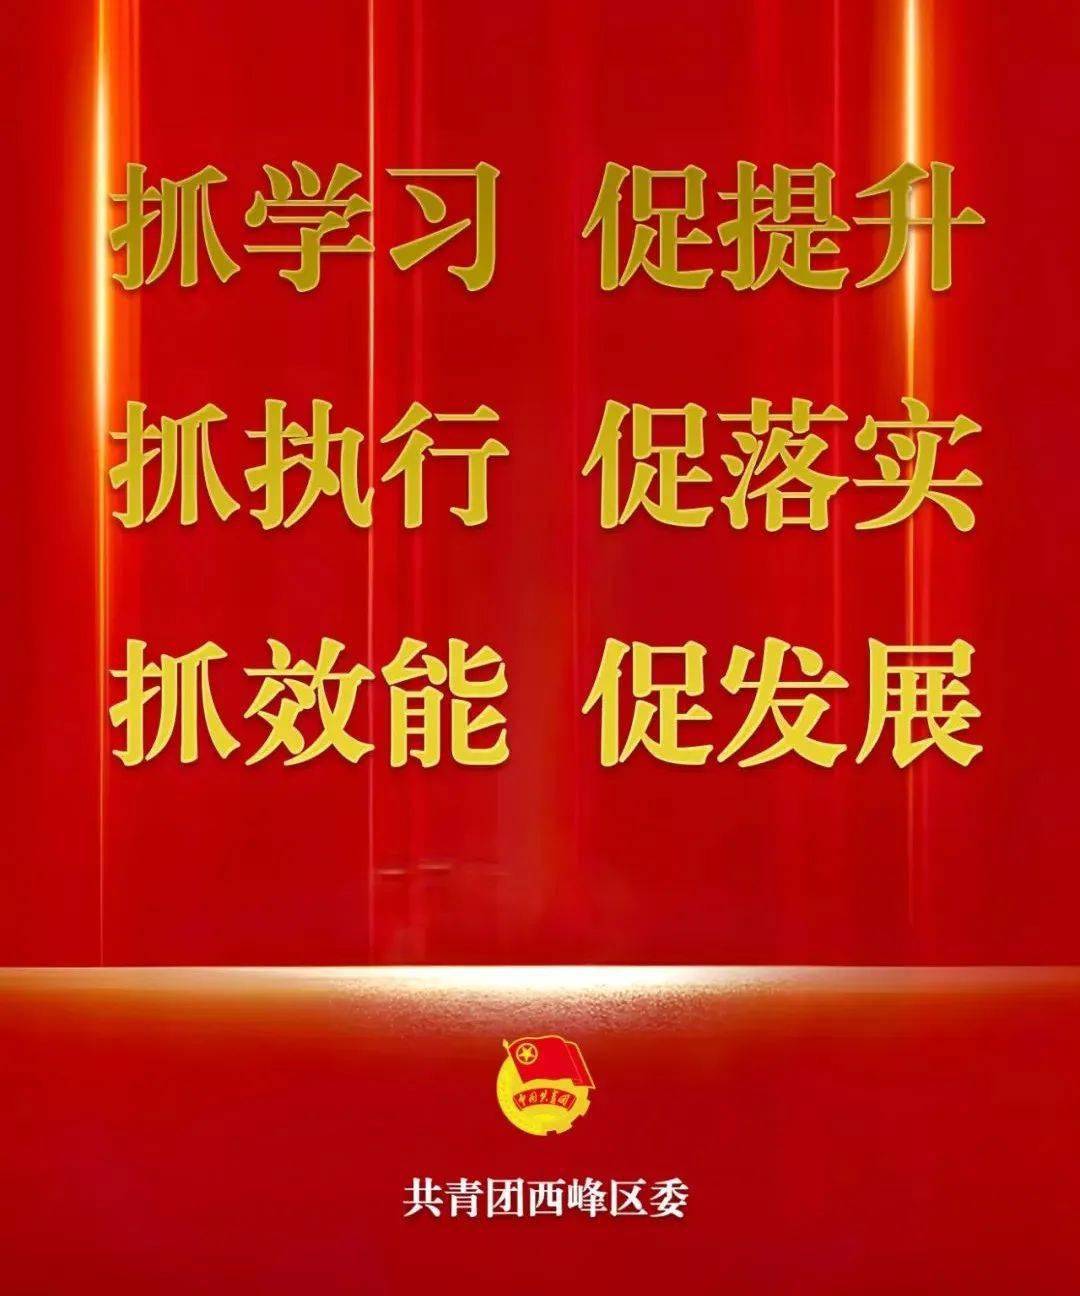 苹果版的熊猫助手官网地址:中国准备好了，丫丫，等你回家！